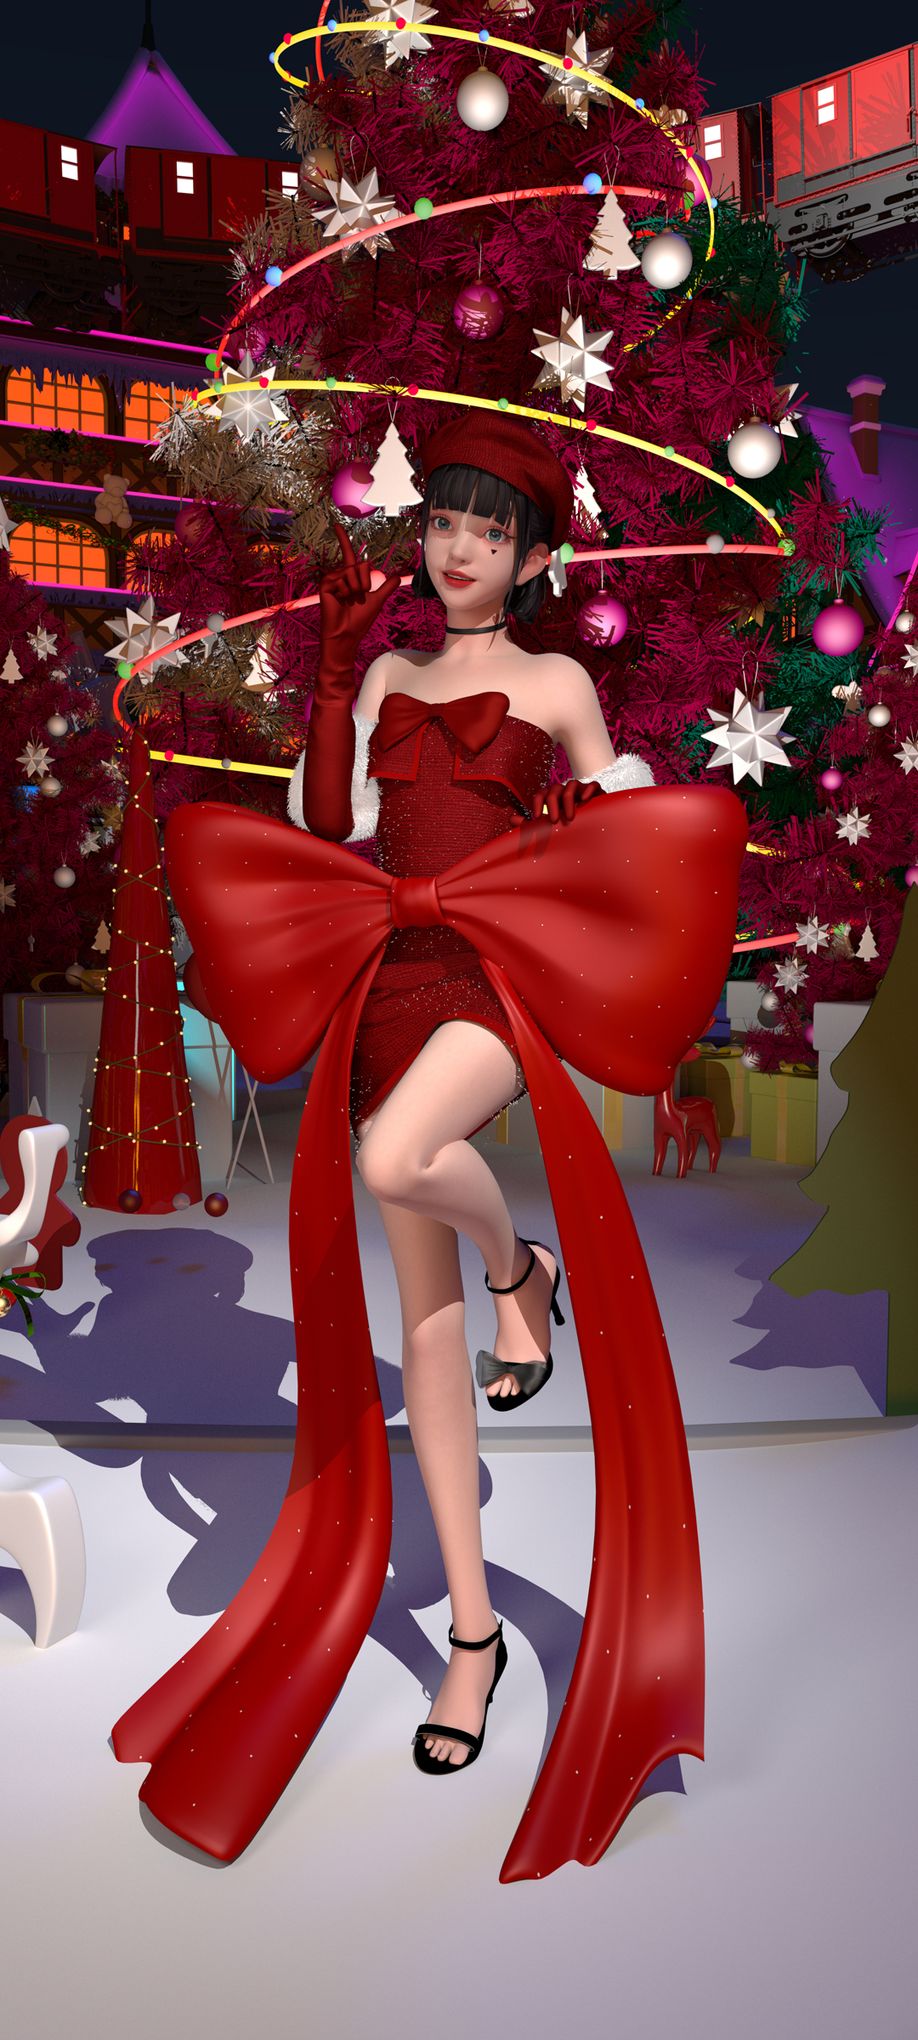 奇幻少女集原美红色裙子圣诞节主题高清手机壁纸